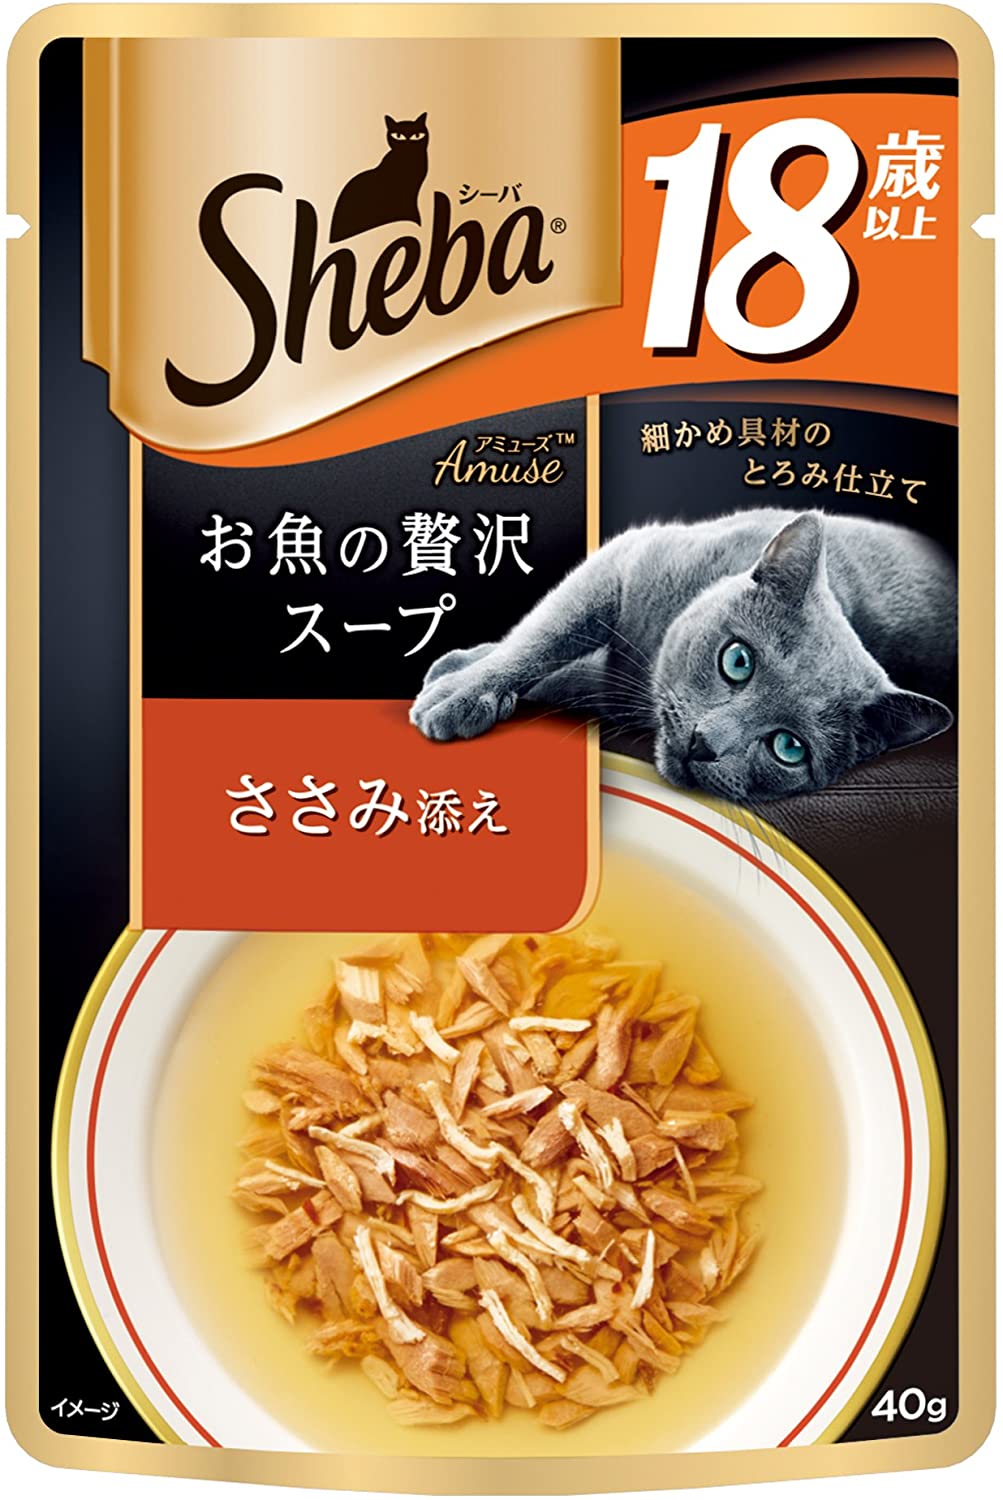 シーバ (Sheba) キャットフード アミューズ お魚の贅沢スープ 18歳以上 ささみ添え 高齢猫